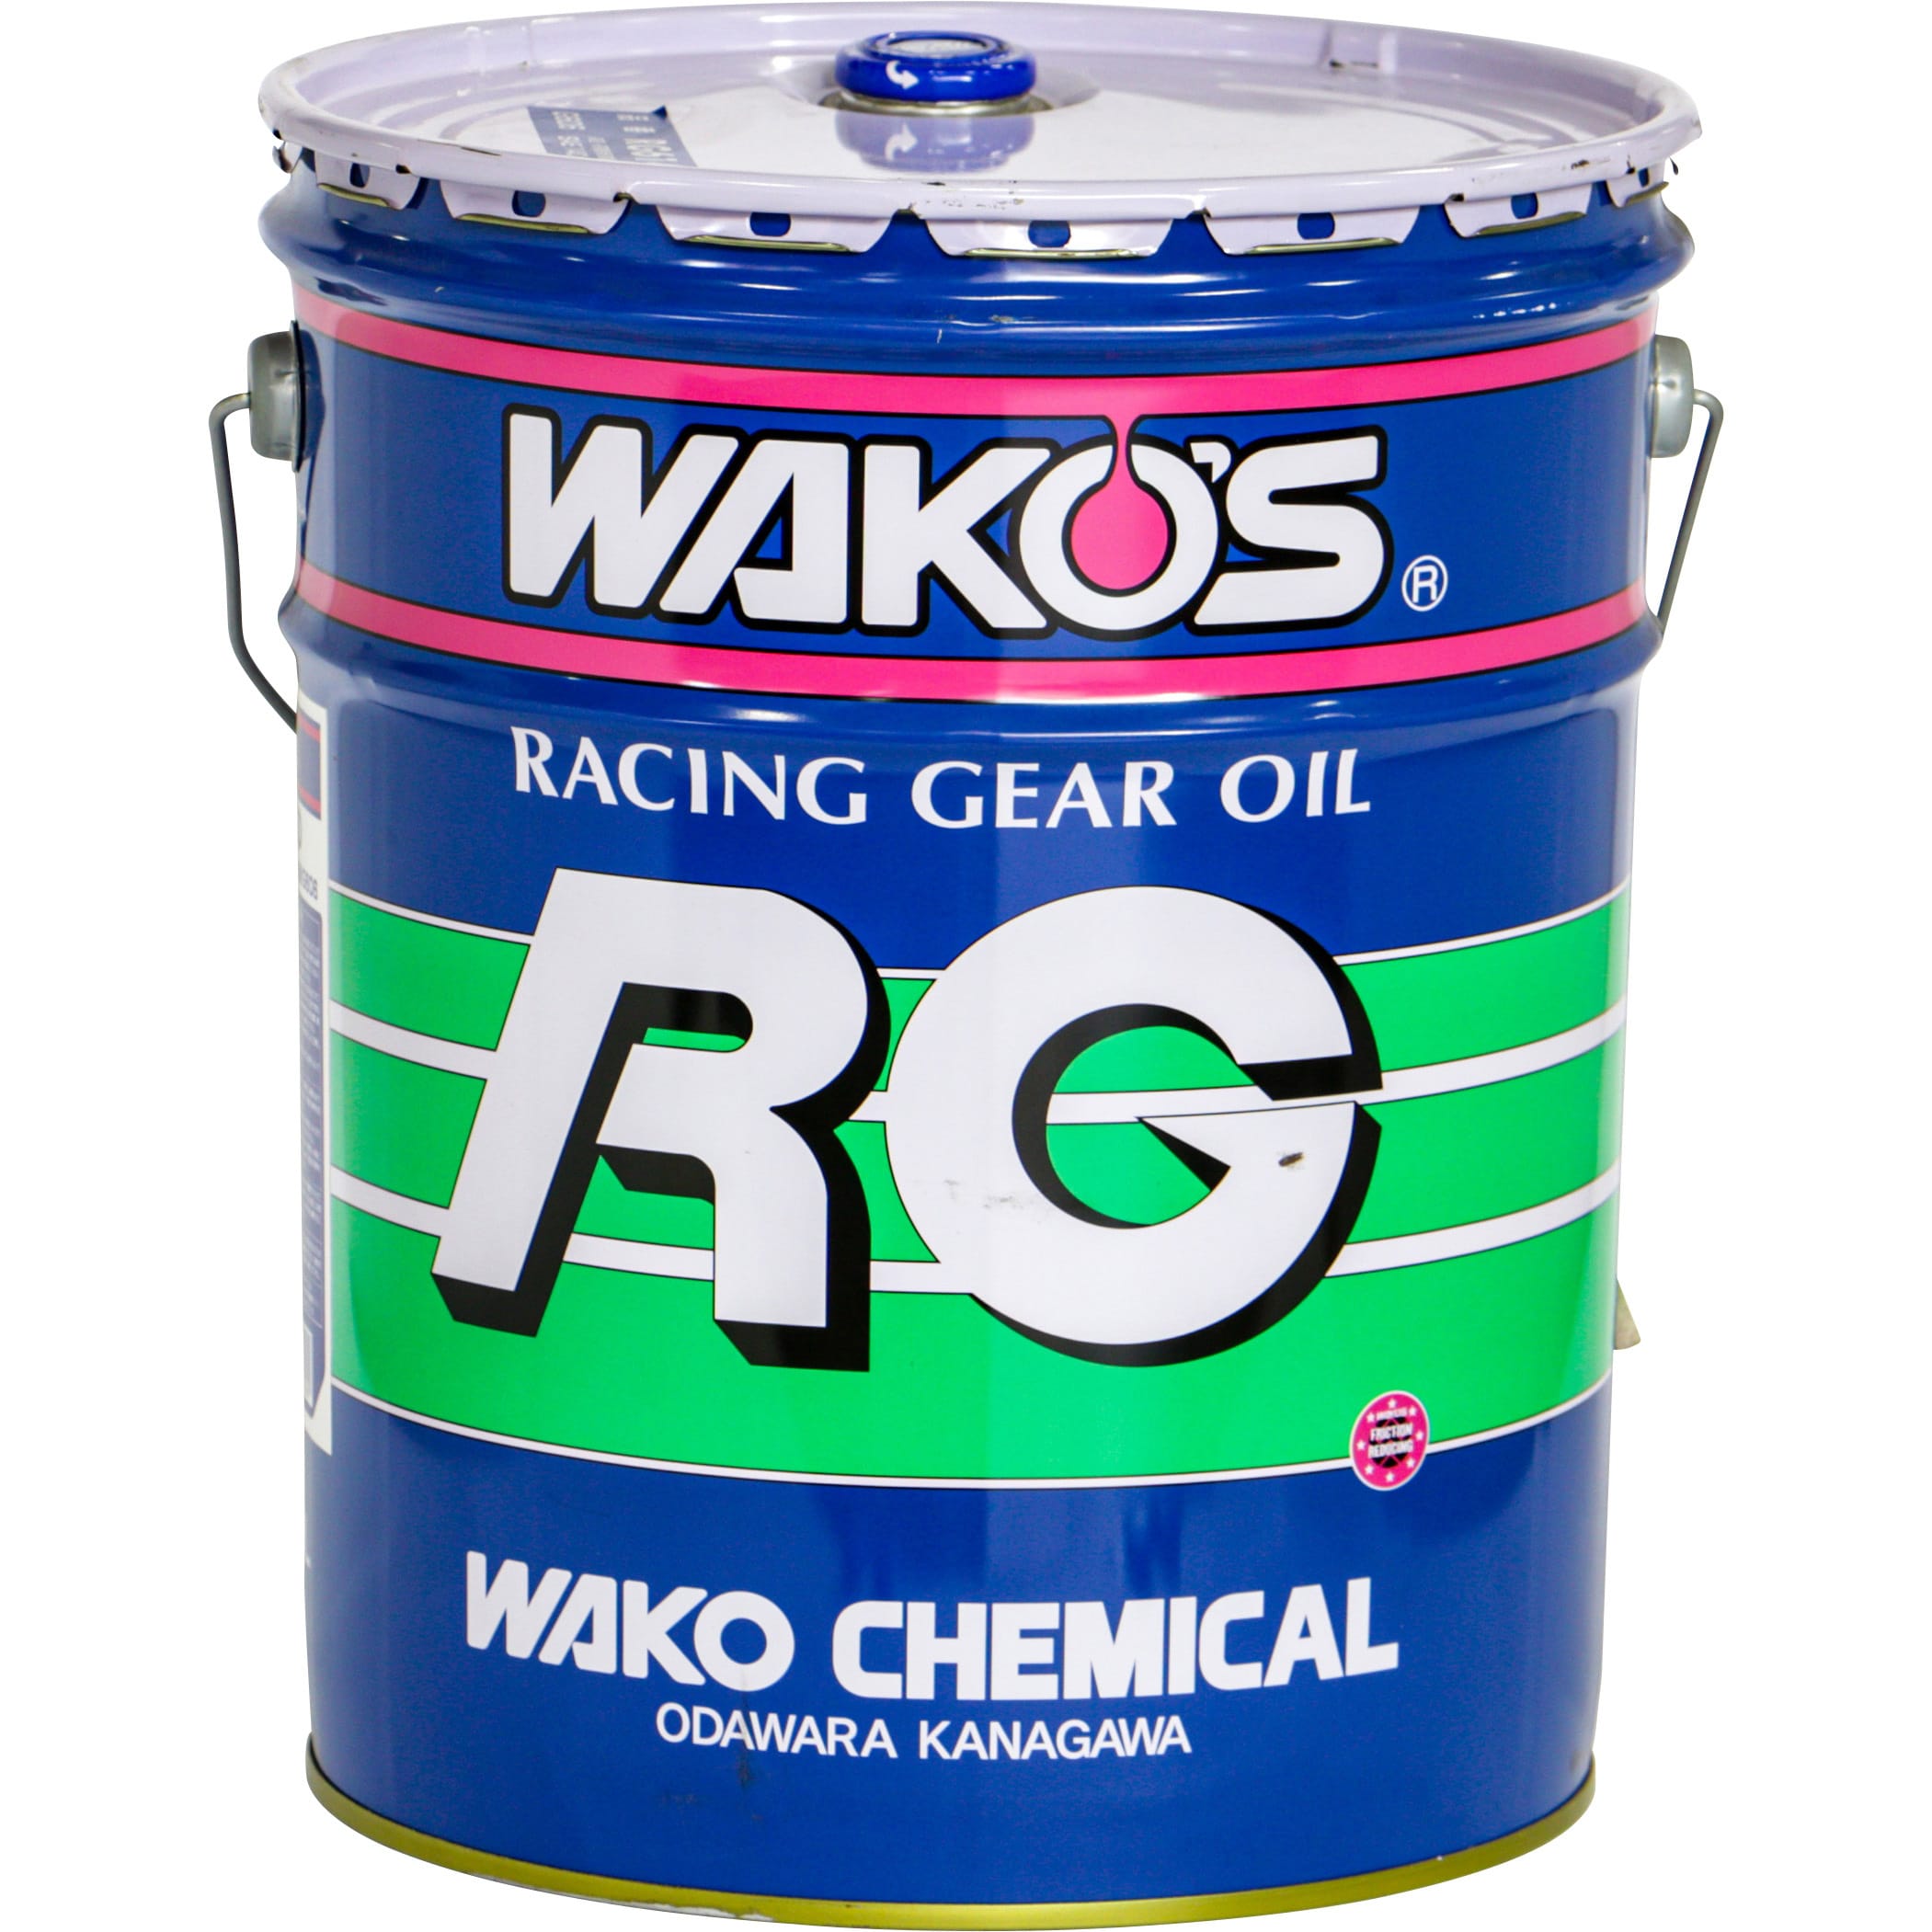 G606 ギヤオイル RG6140LSD 1缶(20L) WAKO'S(ワコーズ) 【通販サイト 